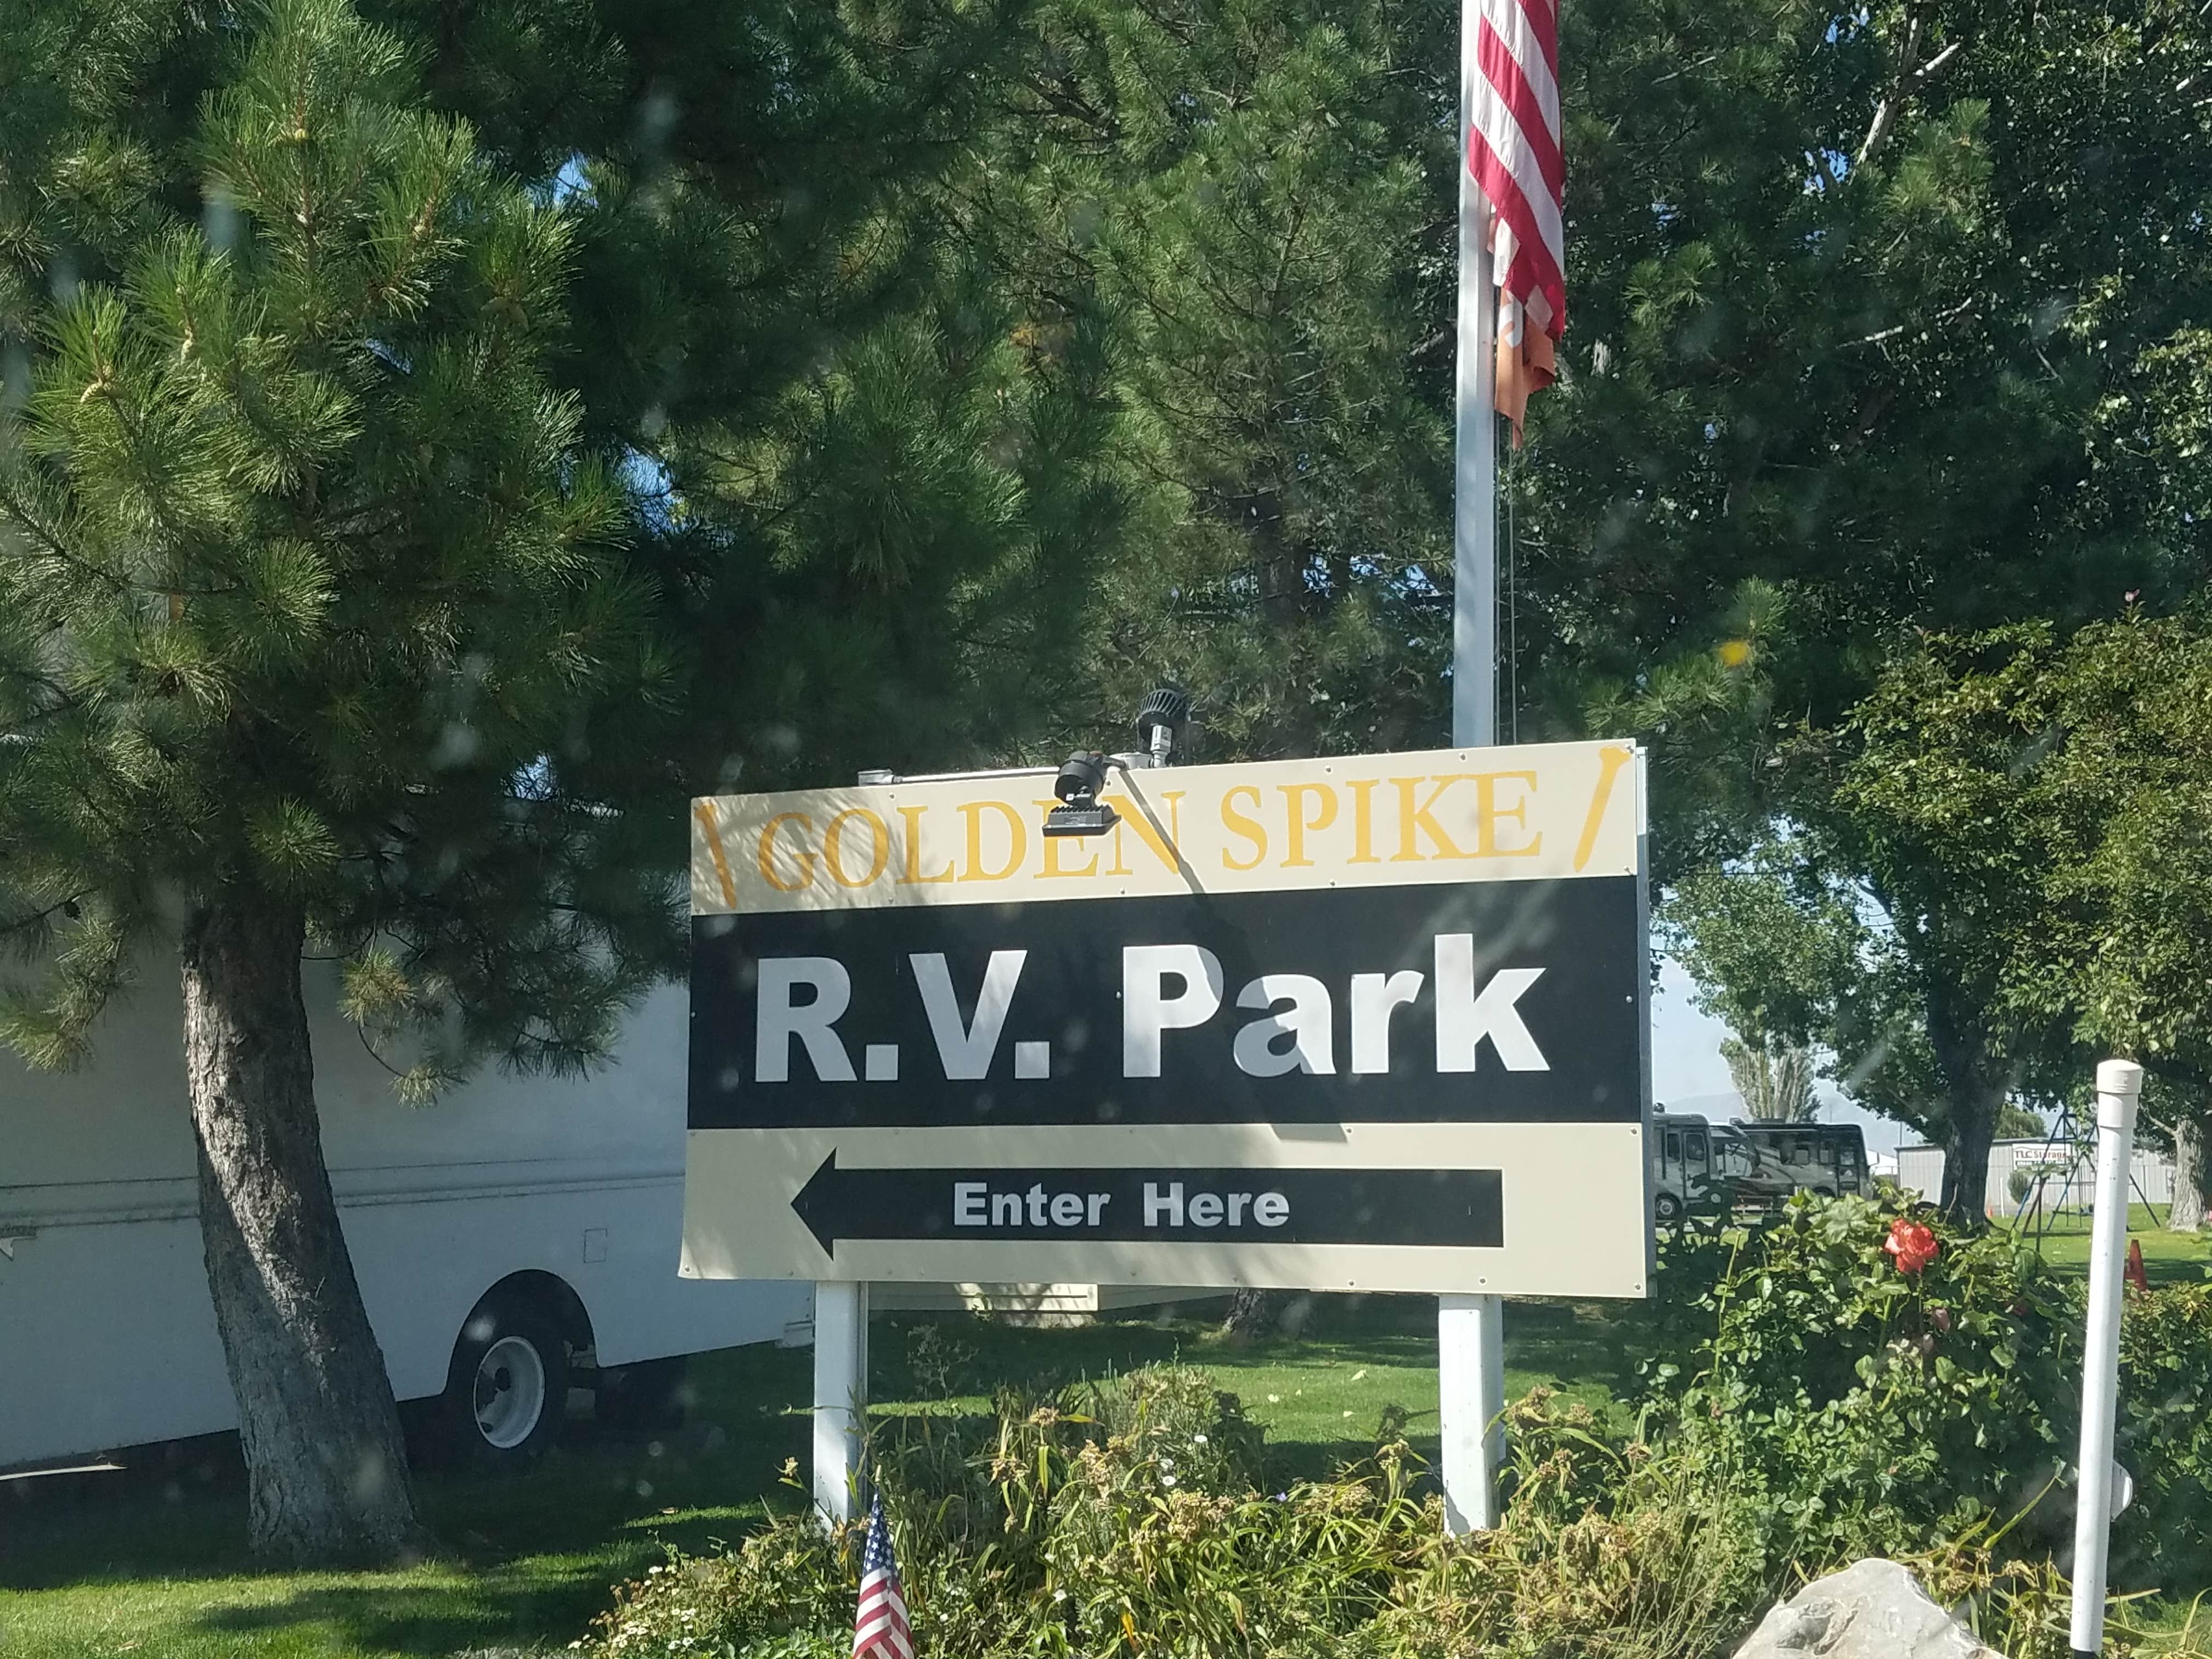  Golden Spike RV Park